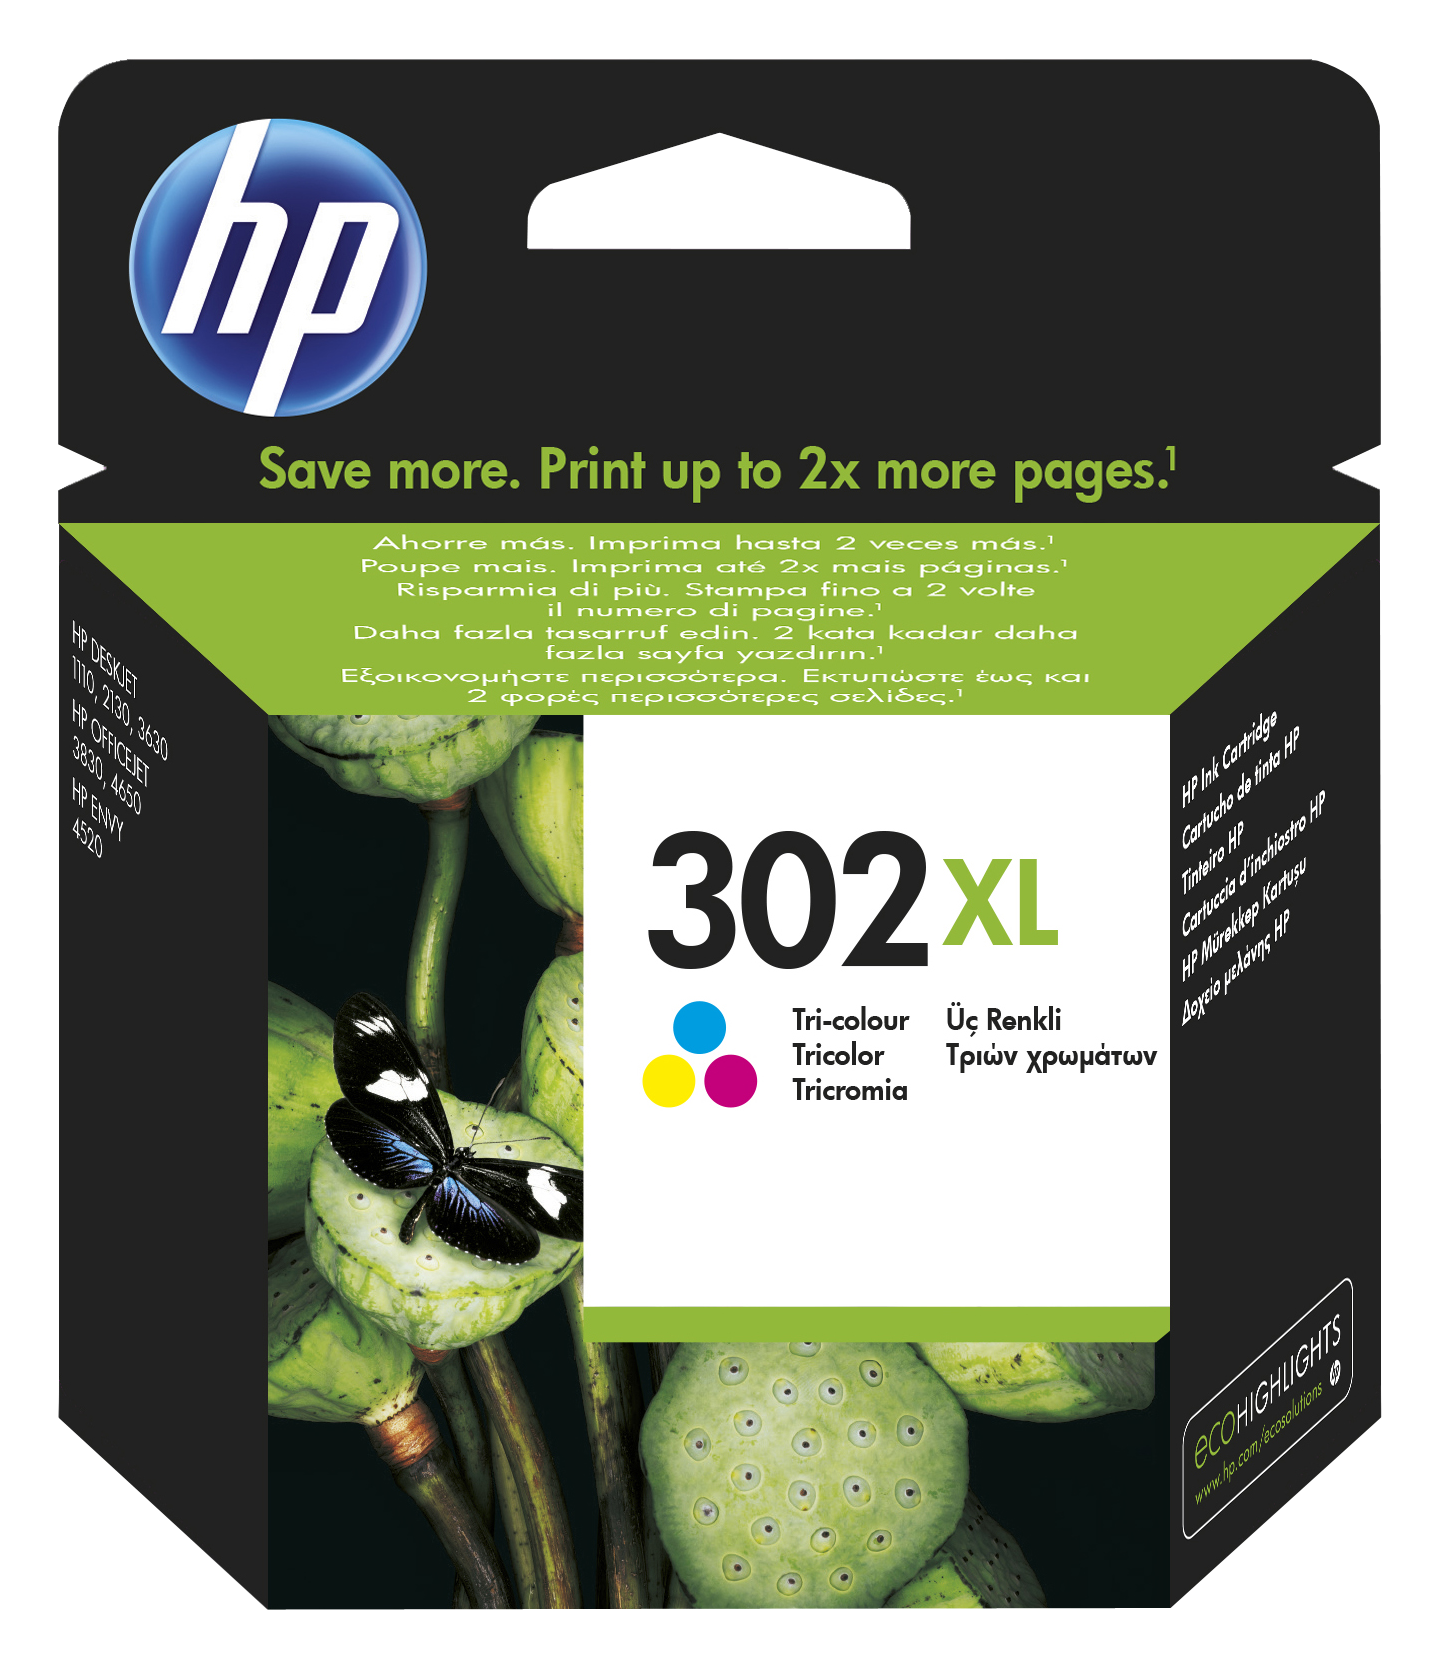 Cartouche d'encre trois couleurs HP 305 authentique